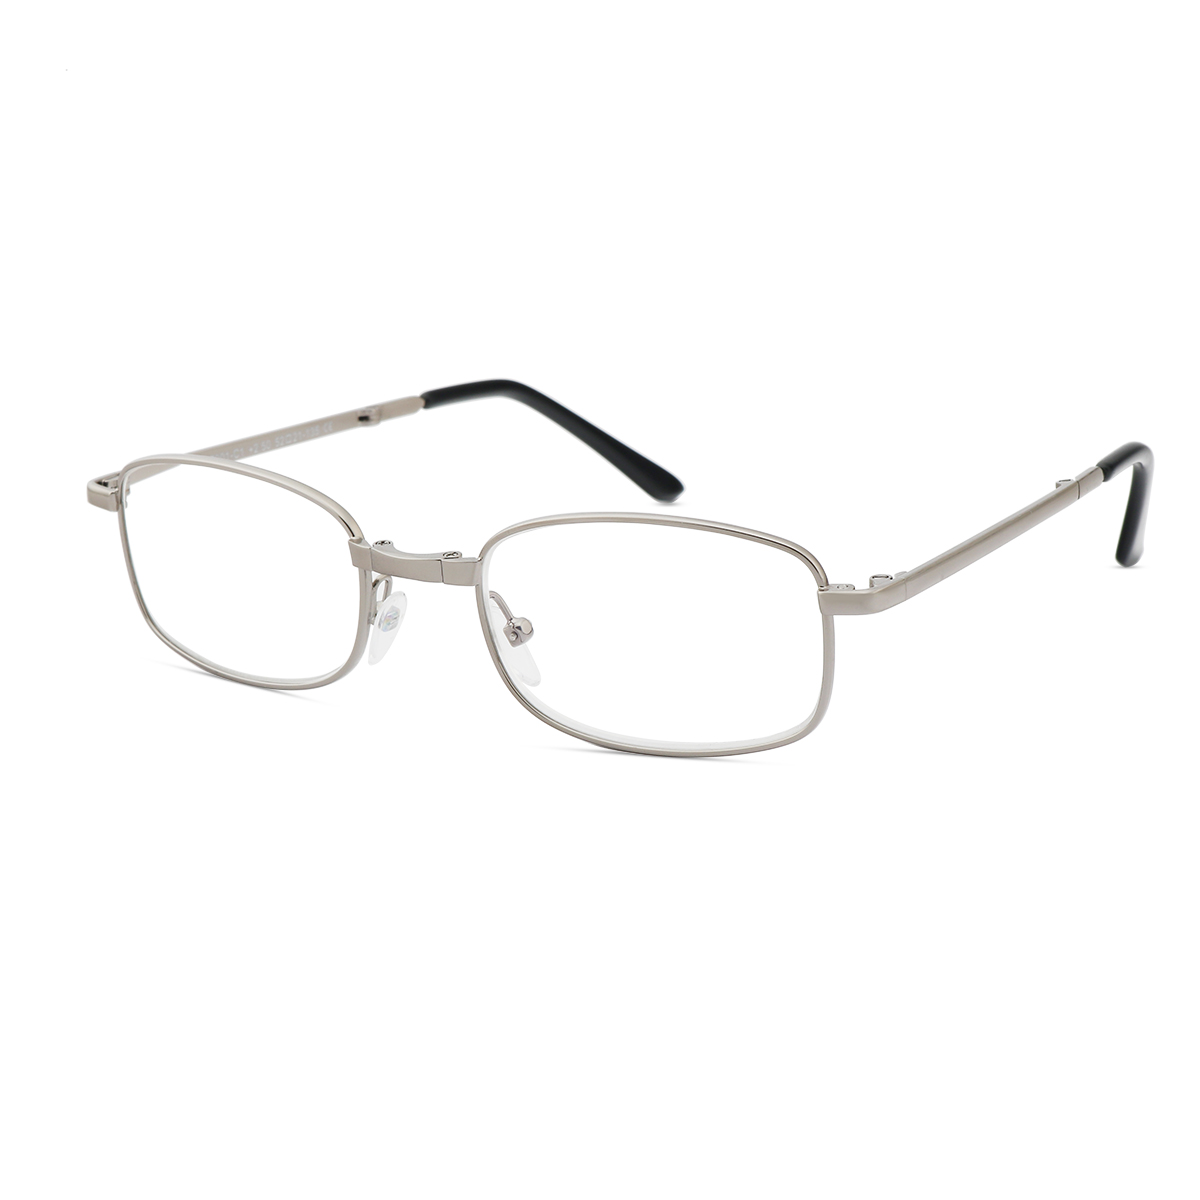 Viv - Rectangle Silver Reading Glasses for Men